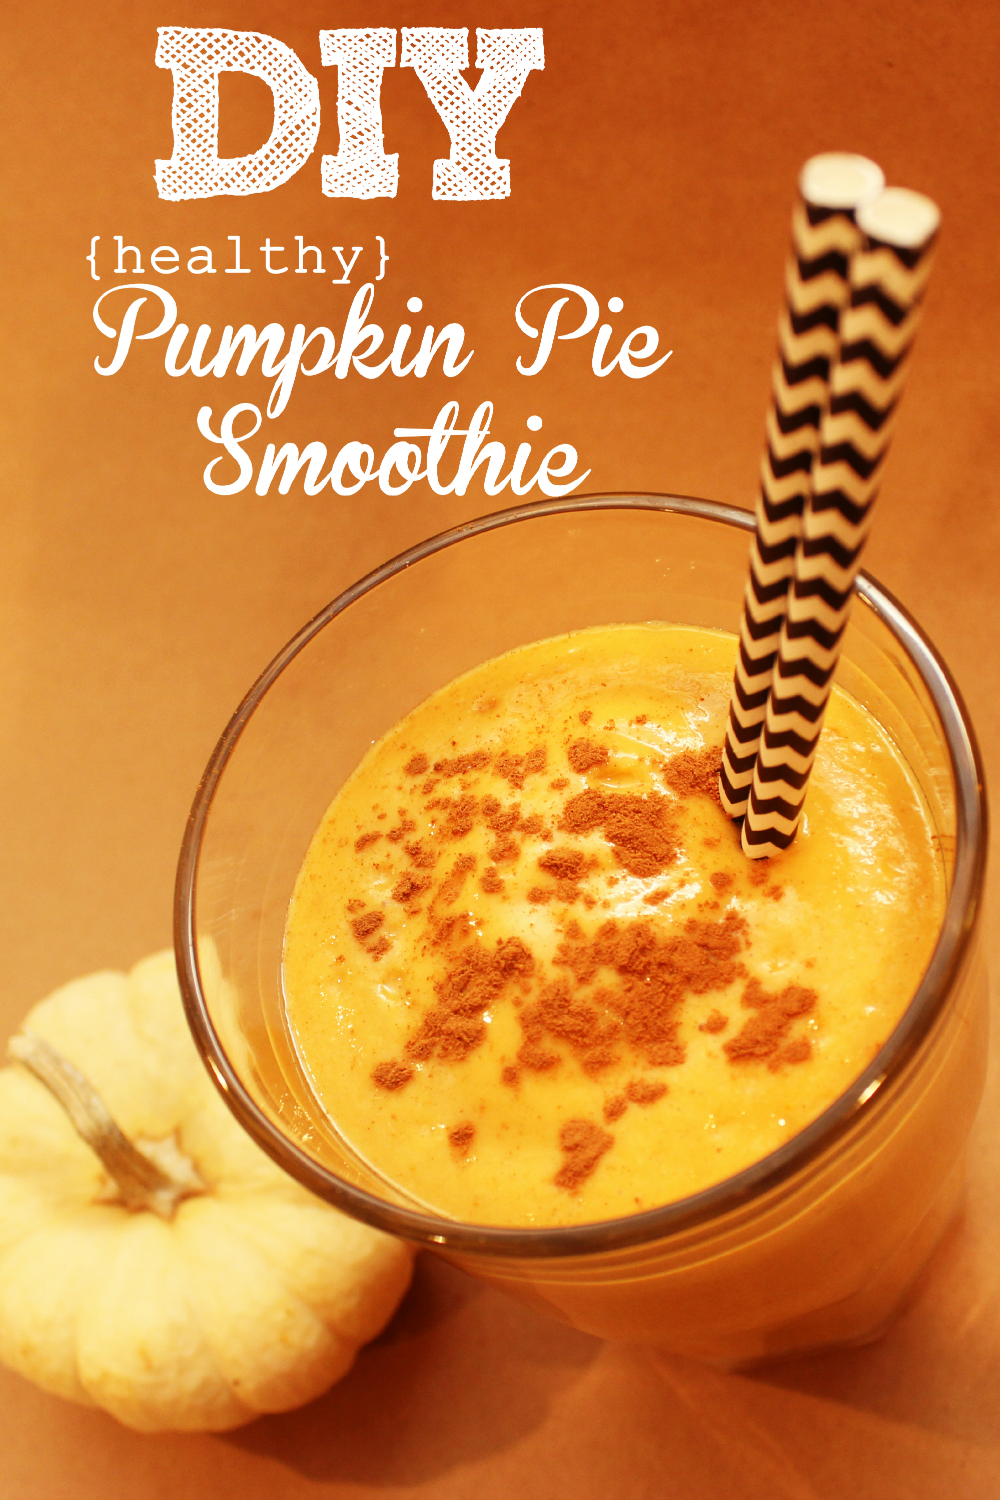 This healthy pumpkin pie smoothie recipe will help